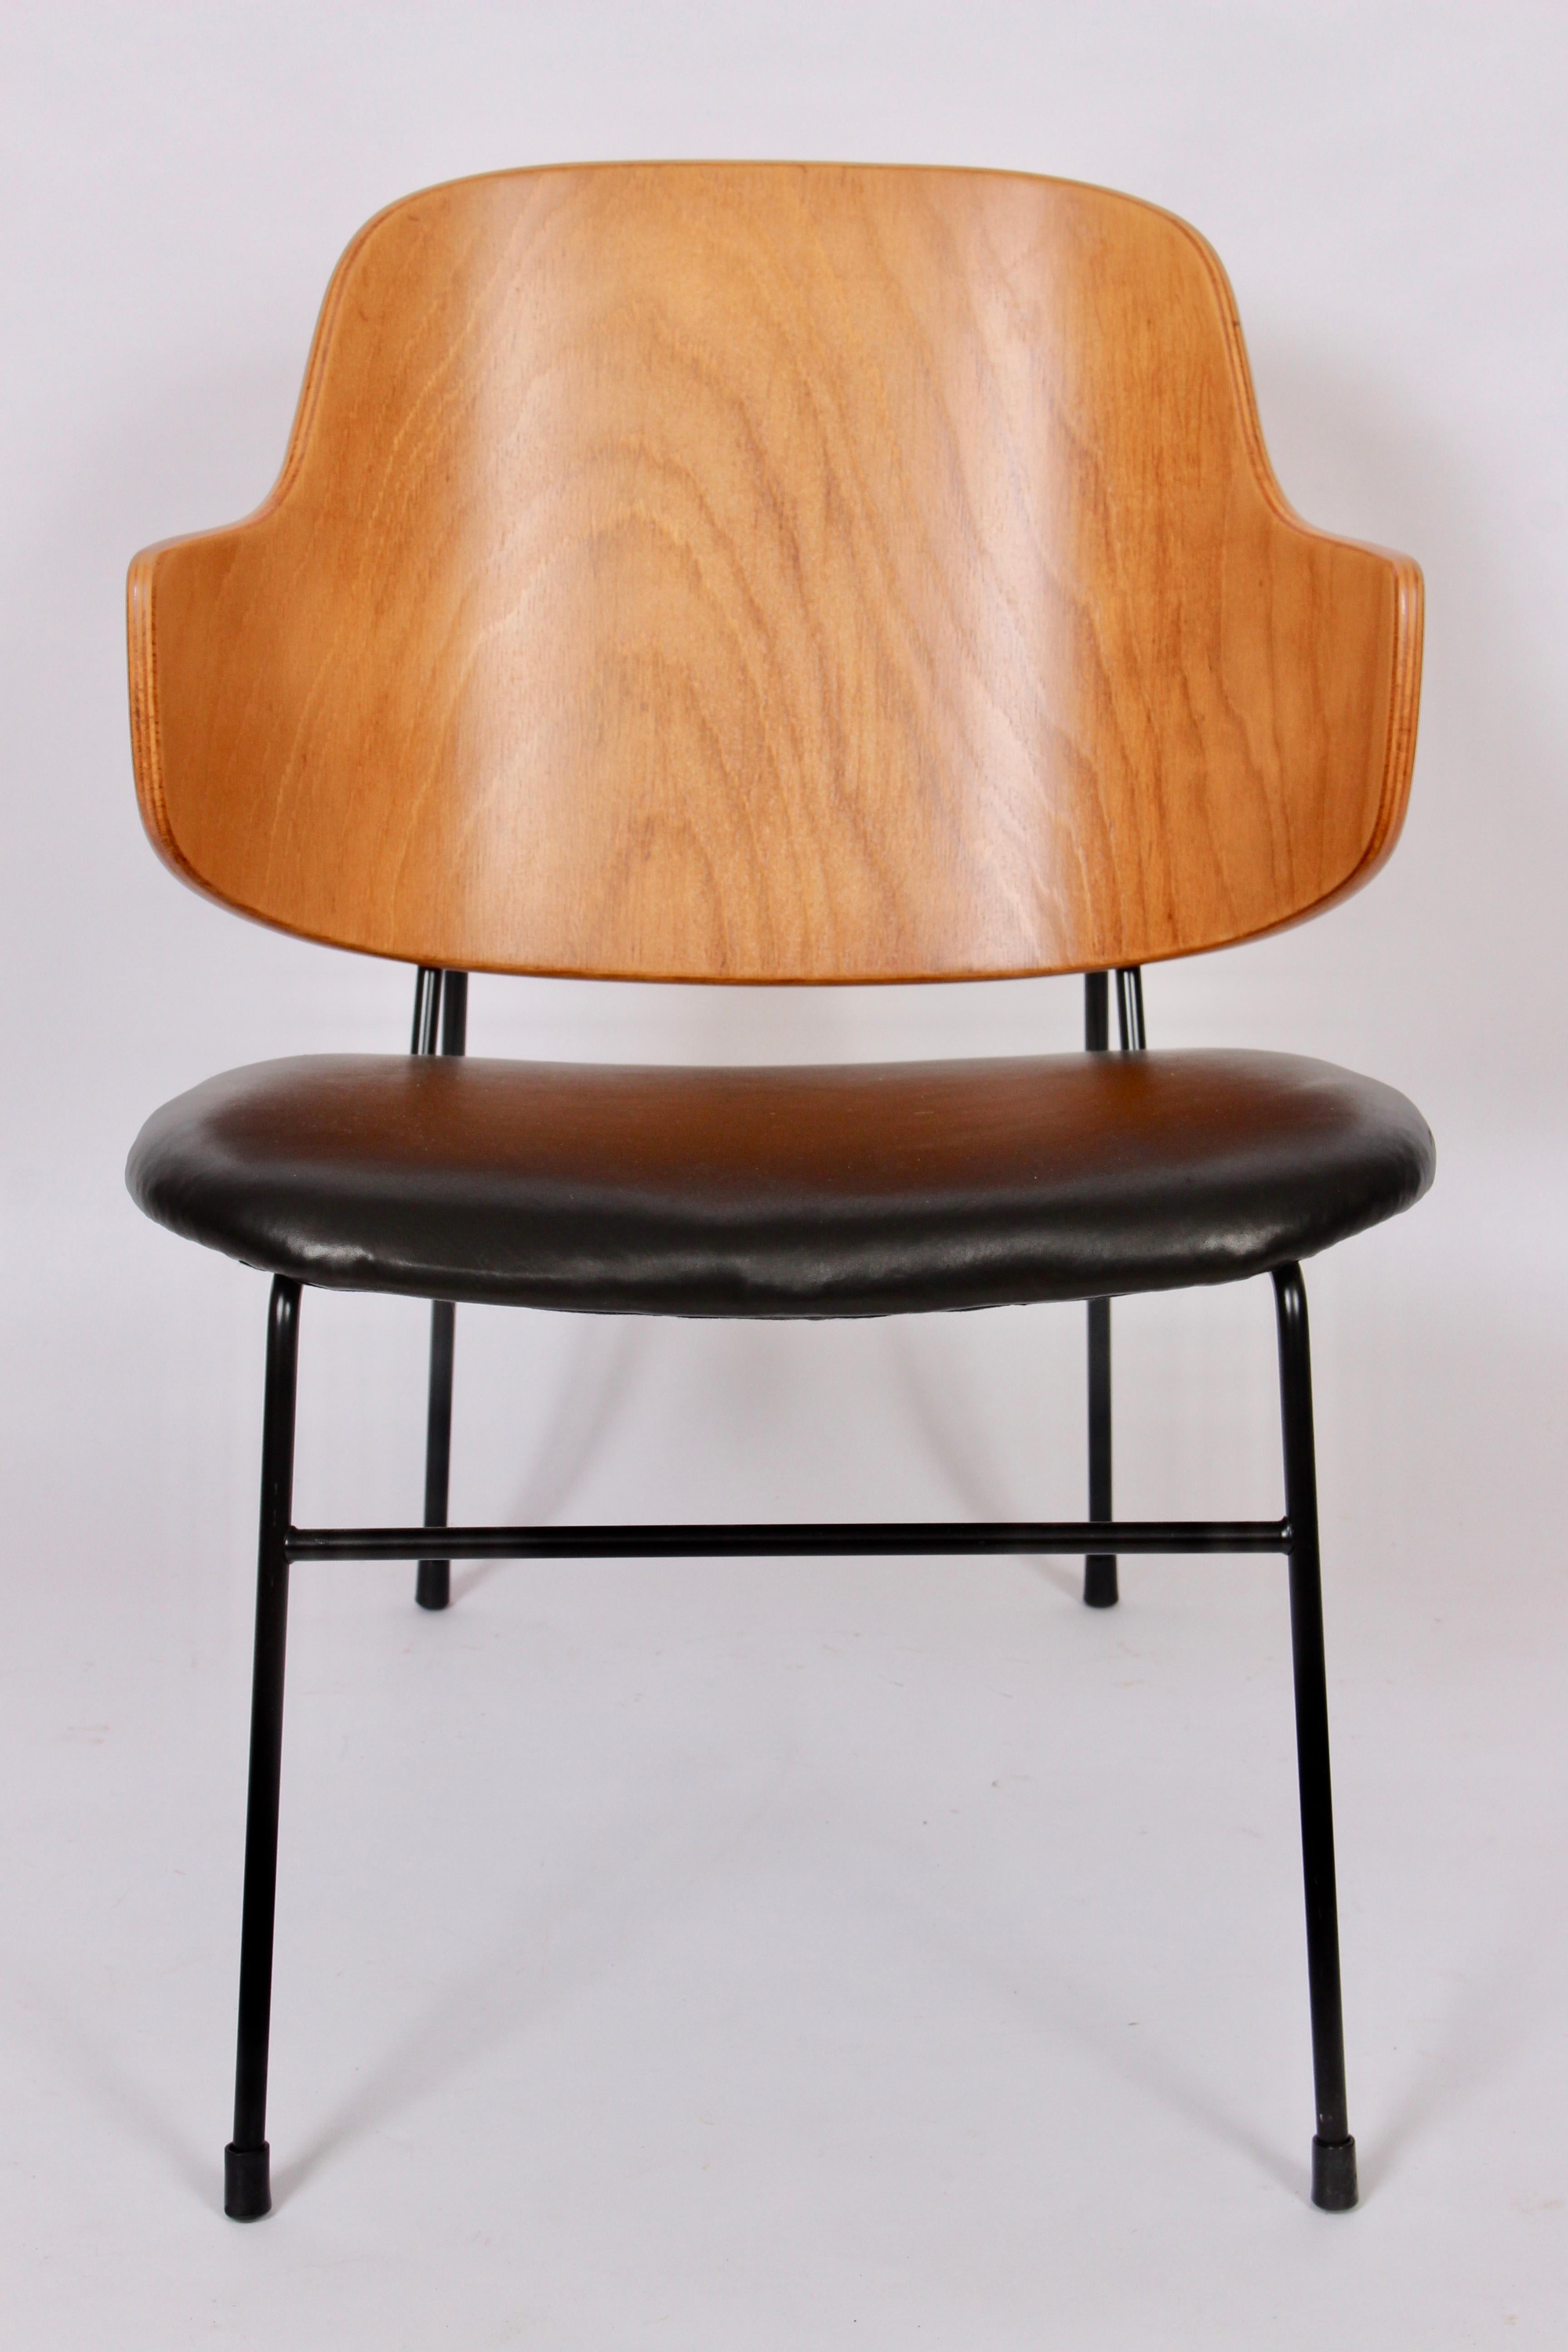 Stuhl „Penguin“ von Ib Kofod-Larsen für Selig, 1960er Jahre (Skandinavische Moderne)